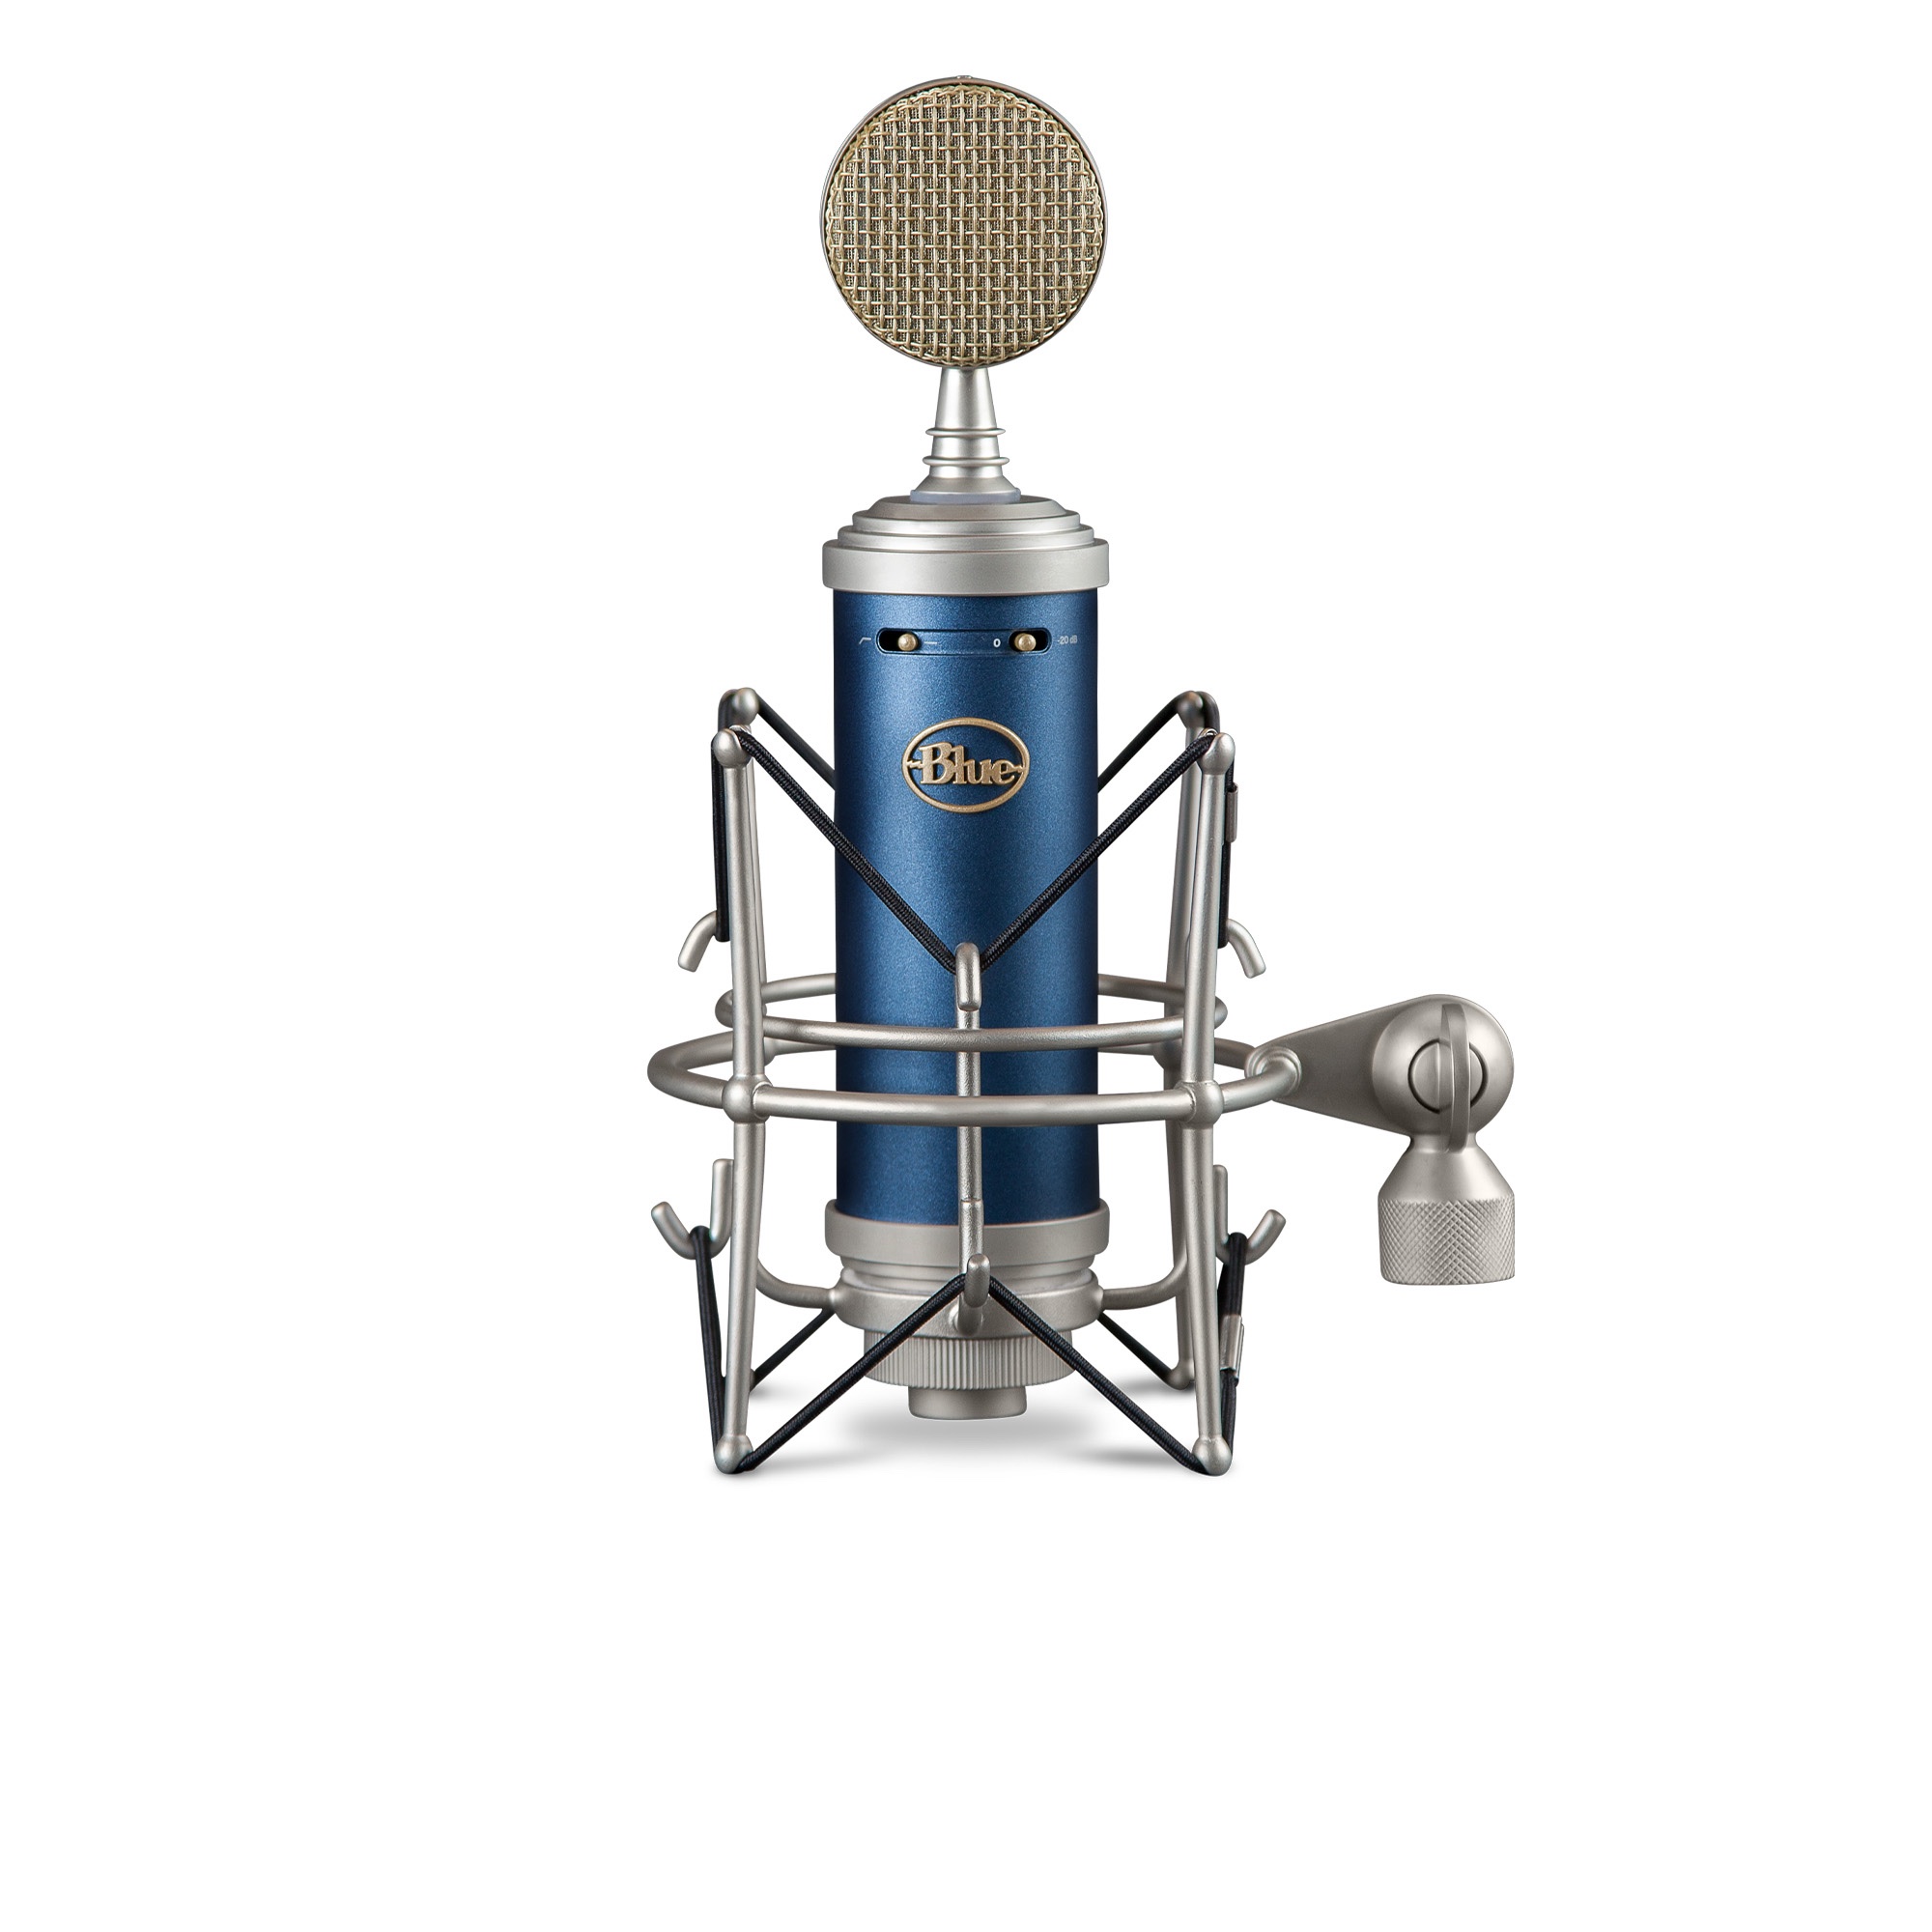 Blue SL kondensatormikrofon